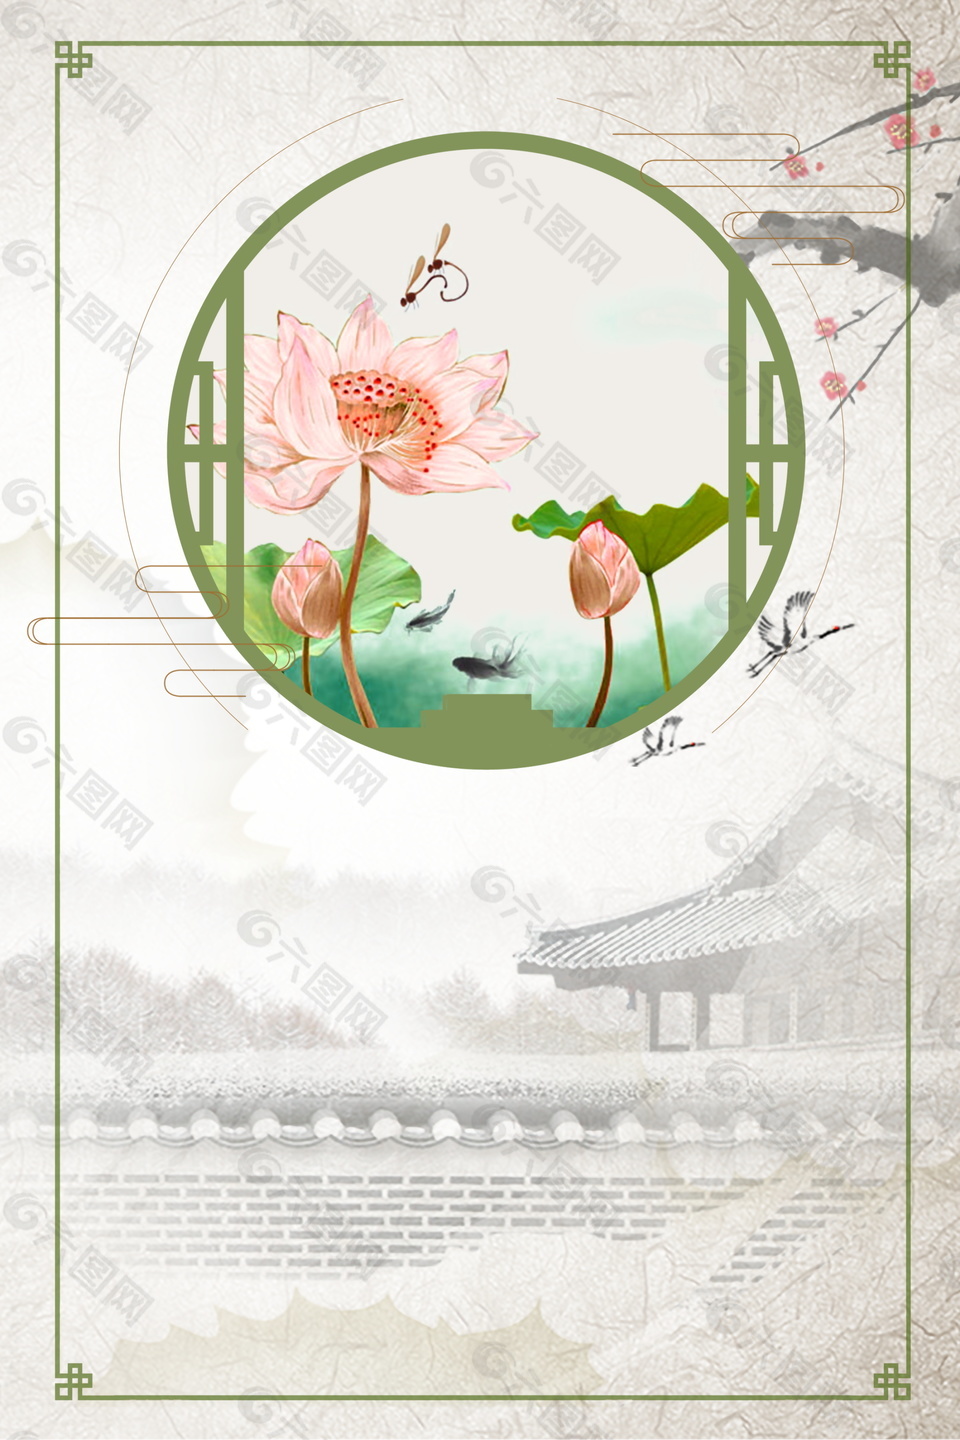 中国风荷花边框主题海报背景设计